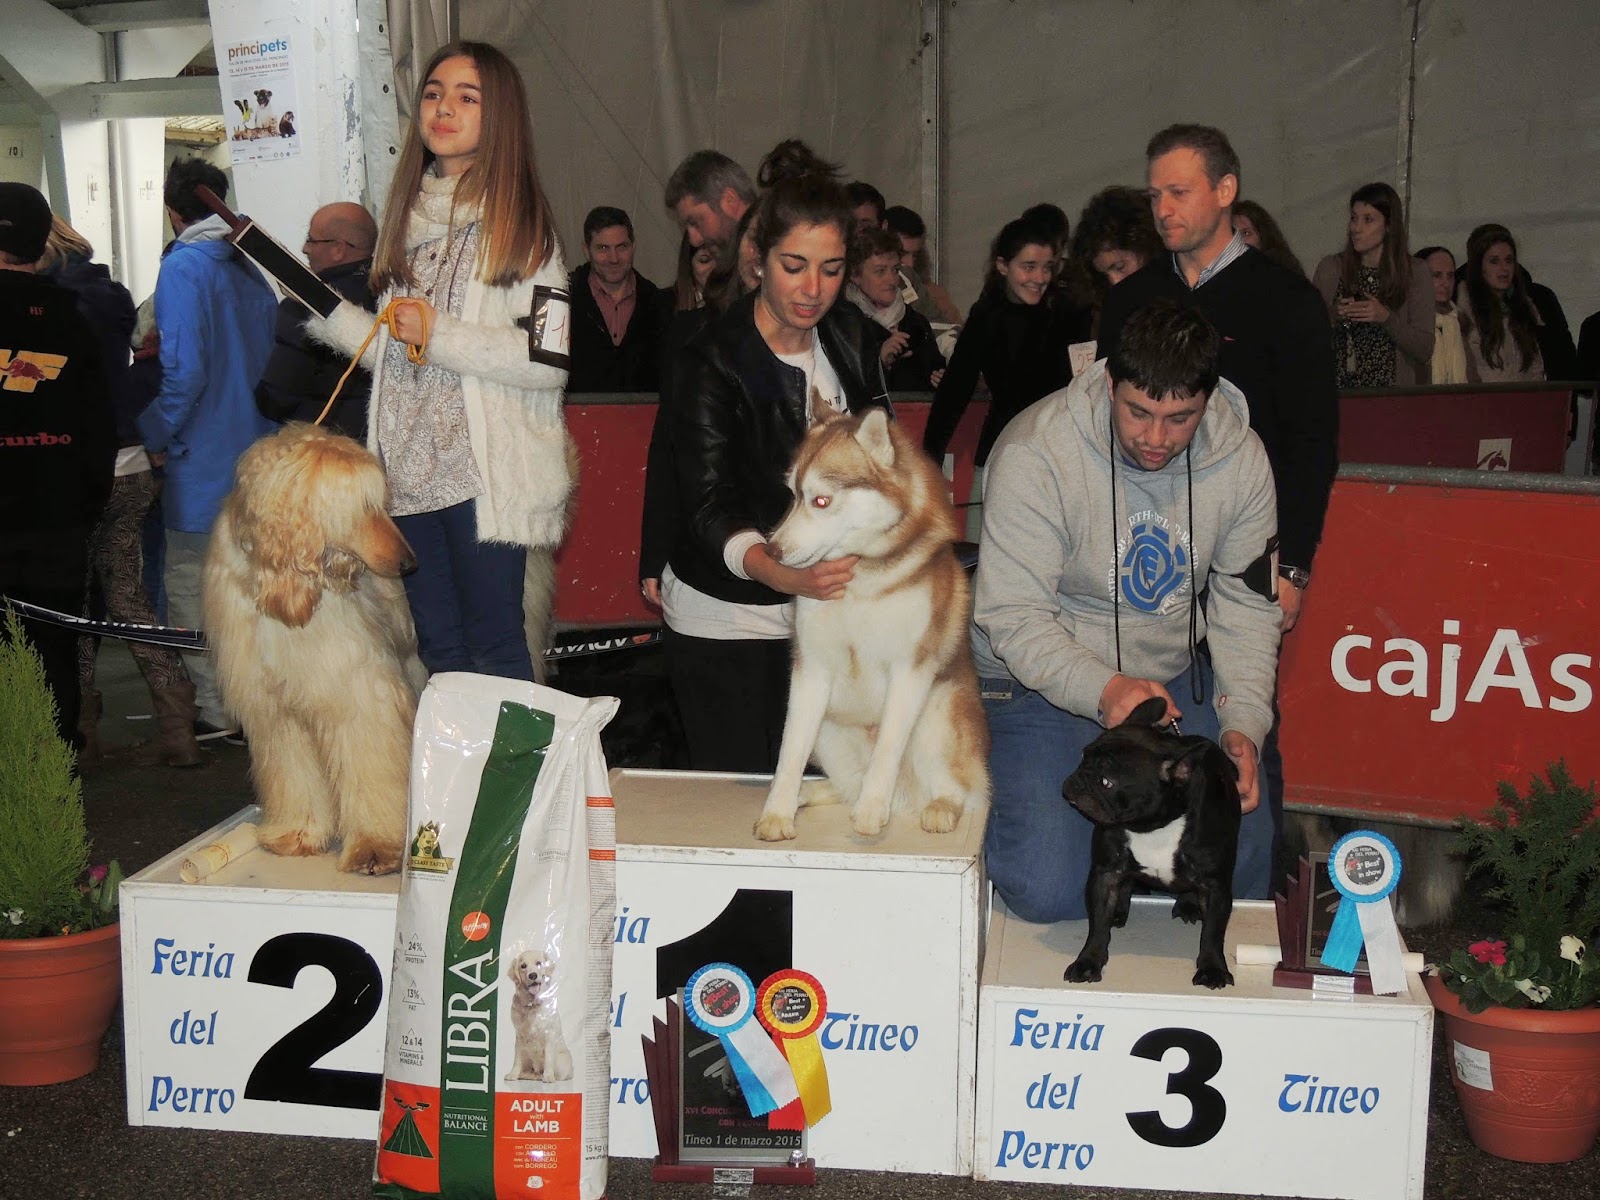 TINEO.- Feria del Perro y concursos caninos este fin de semana. Hoy, cros solidario